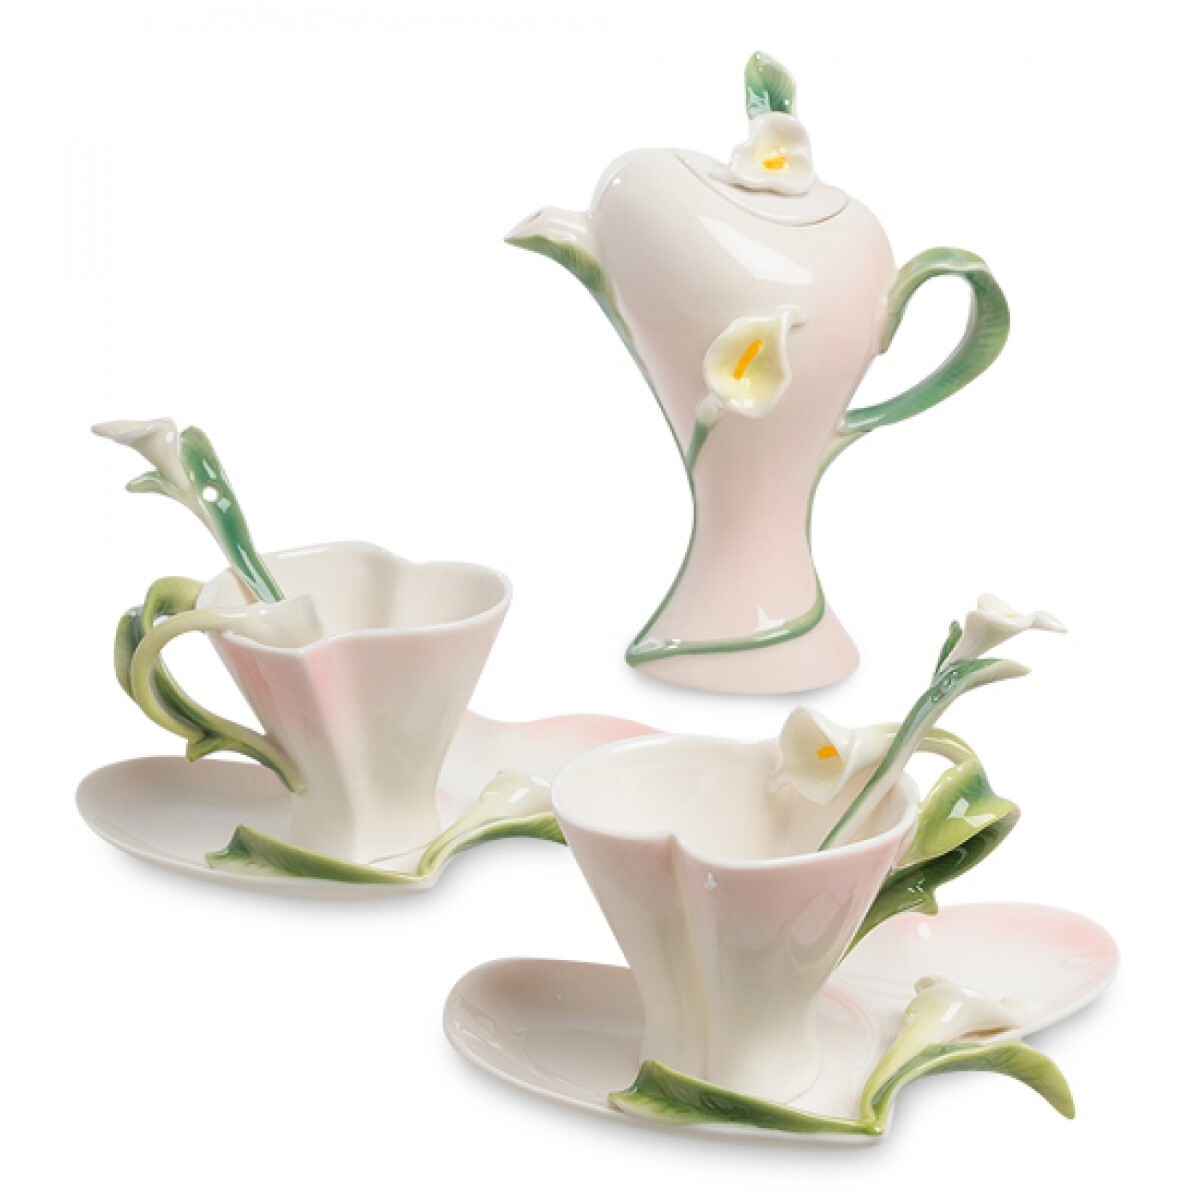 Тд фарфор. Чайный набор "каллы" (Pavone) на 2 персоны. Pavone чайный набор каллы. Чайный сервиз "чайная симфония". Чайный набор 6 персон Pavone.